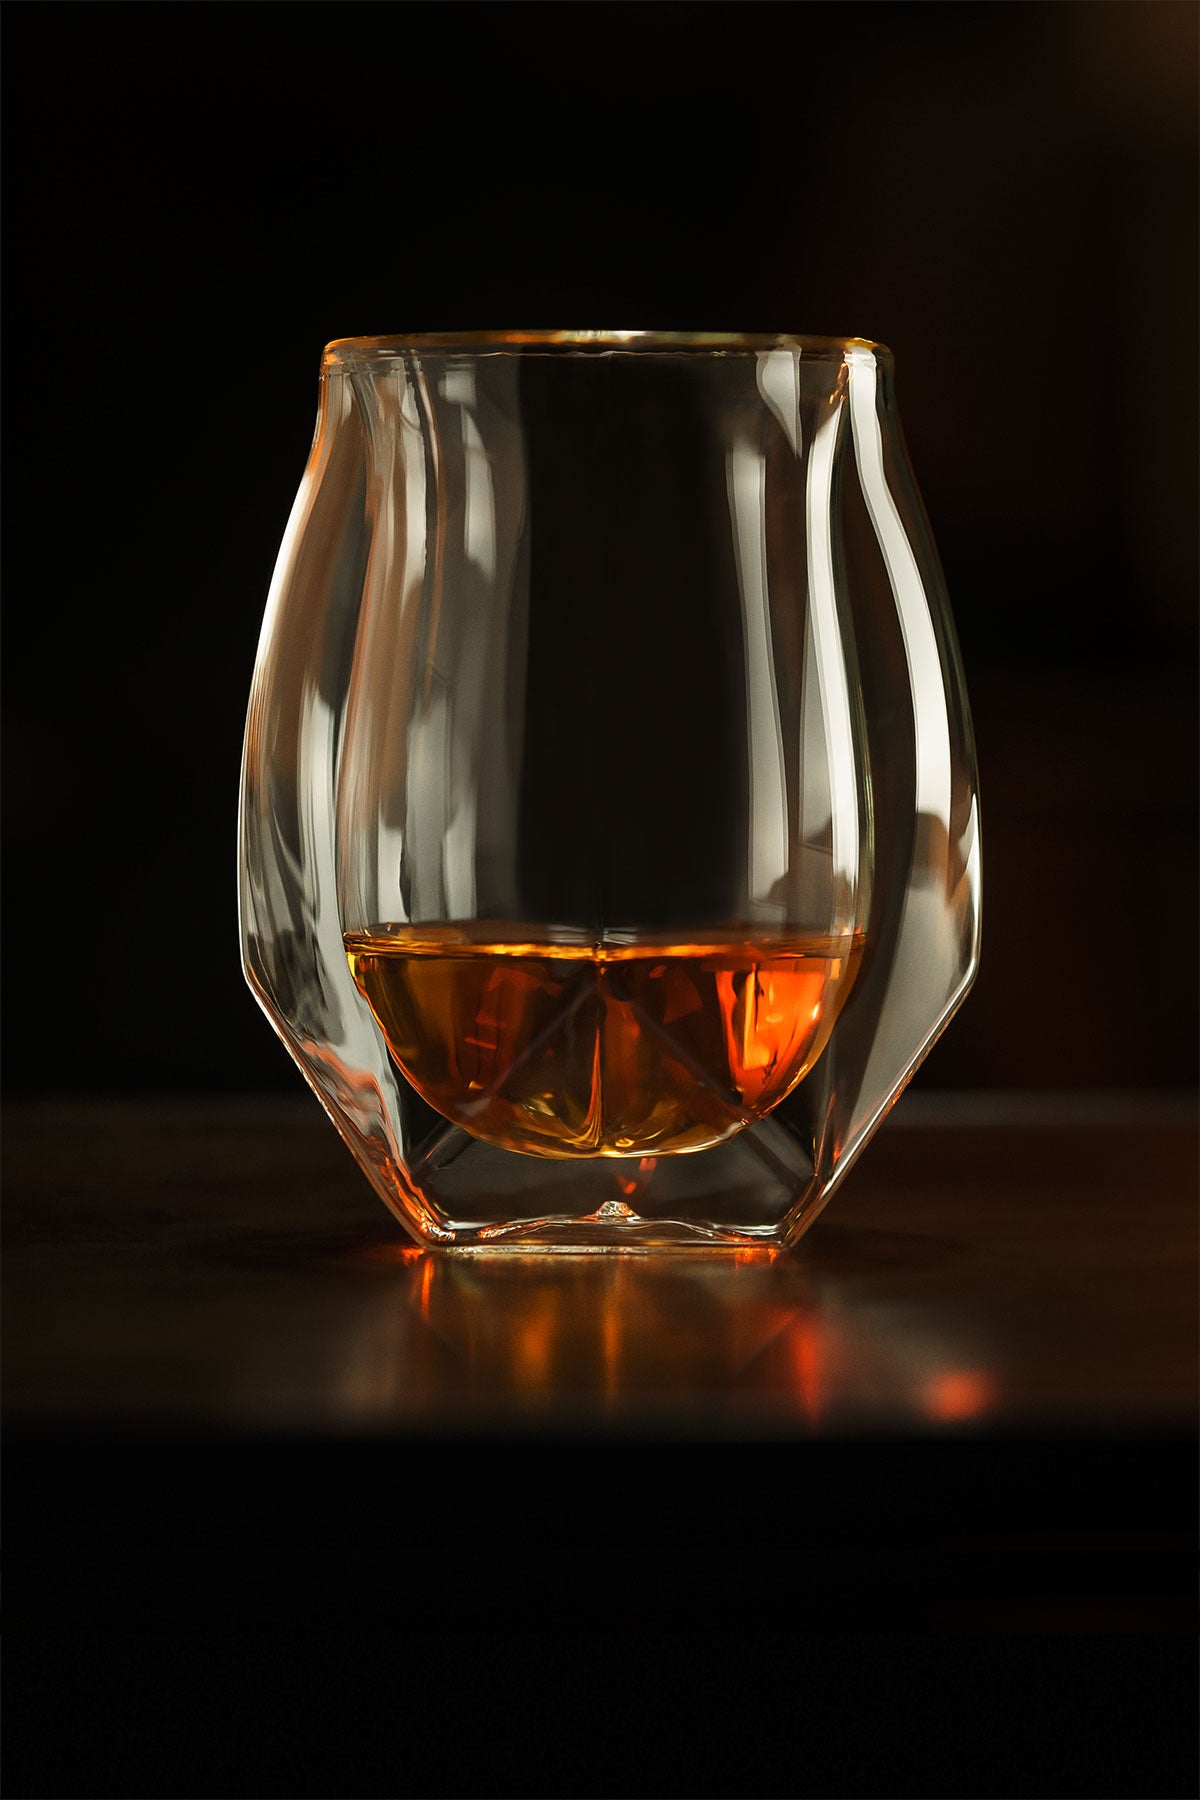 https://uk.norlanglass.com/cdn/shop/files/Norlan-Whisky-Glass-Beautiful-M.jpg?v=1665488251&width=1500